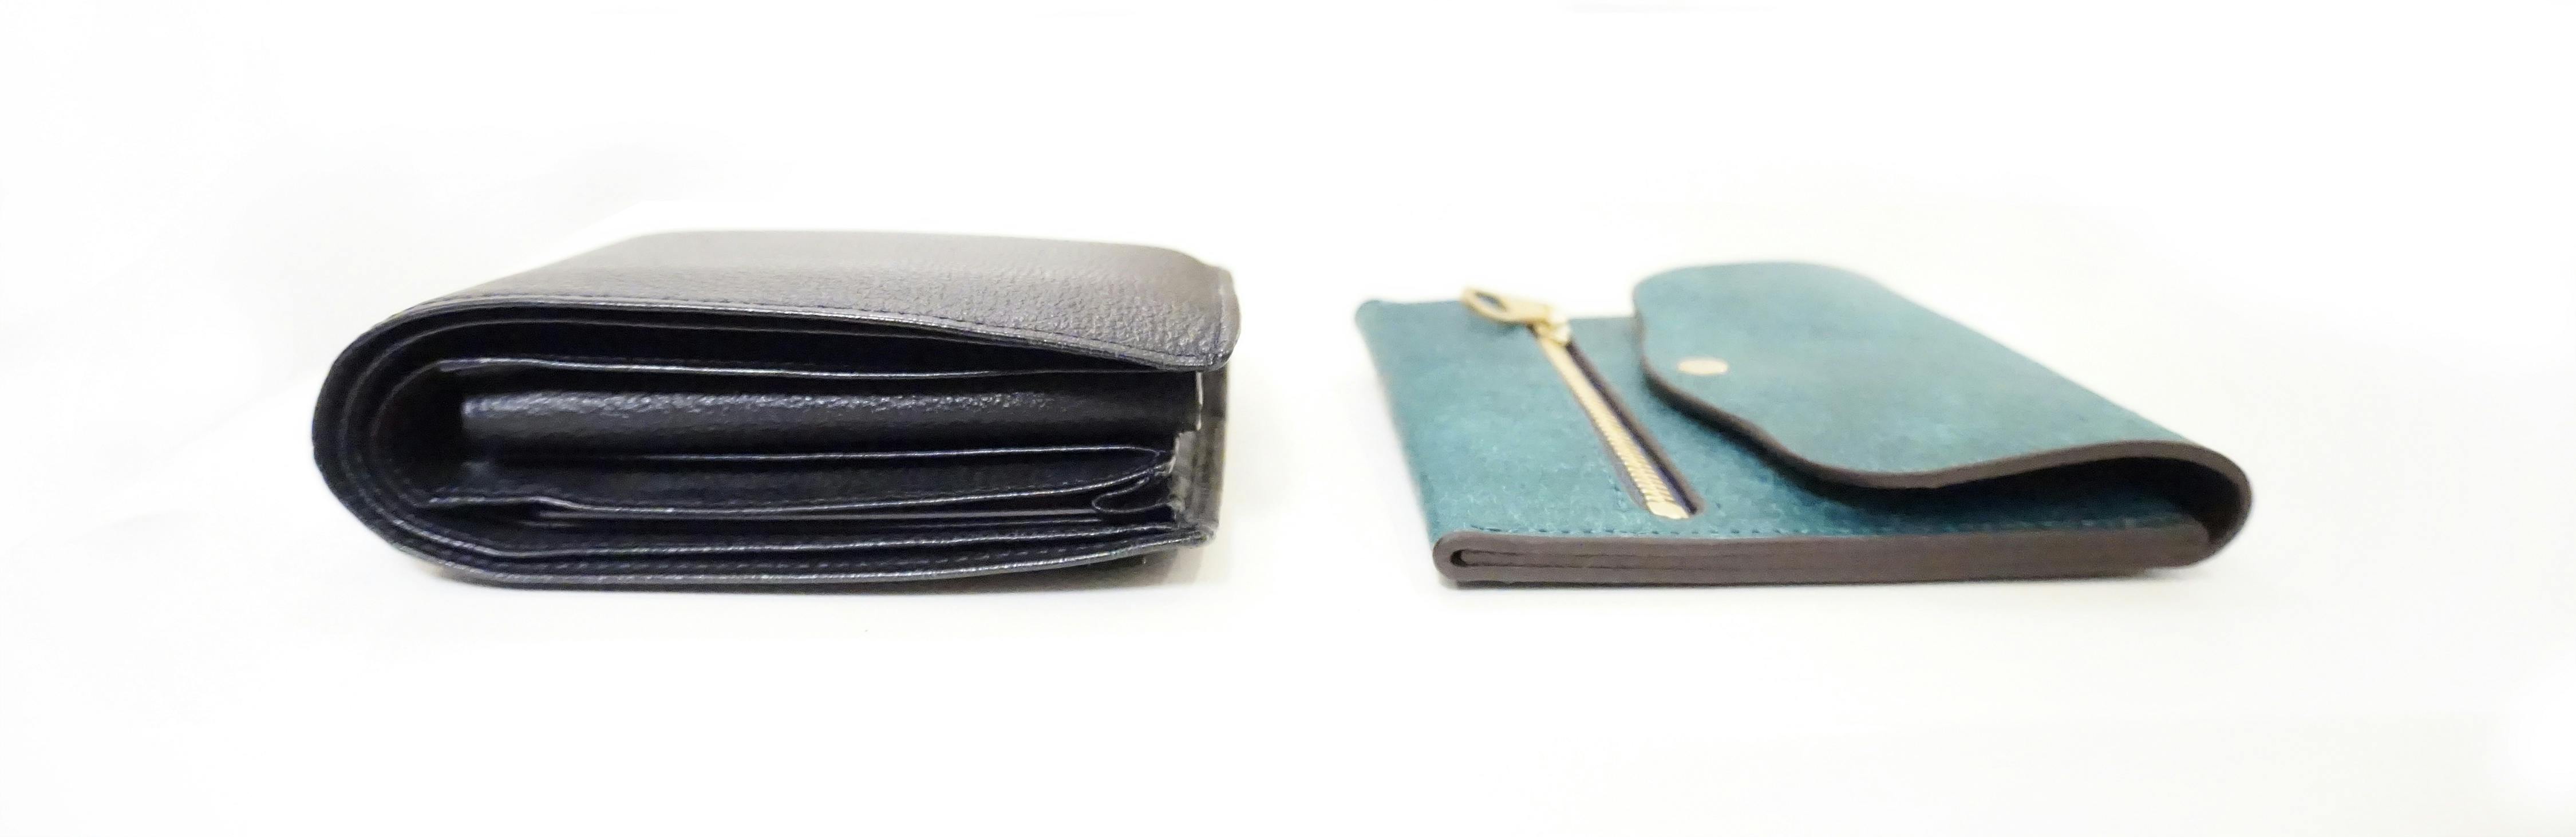 一枚革のコンパクト財布ICHI – moku | 薄い財布などの革小物ブランド